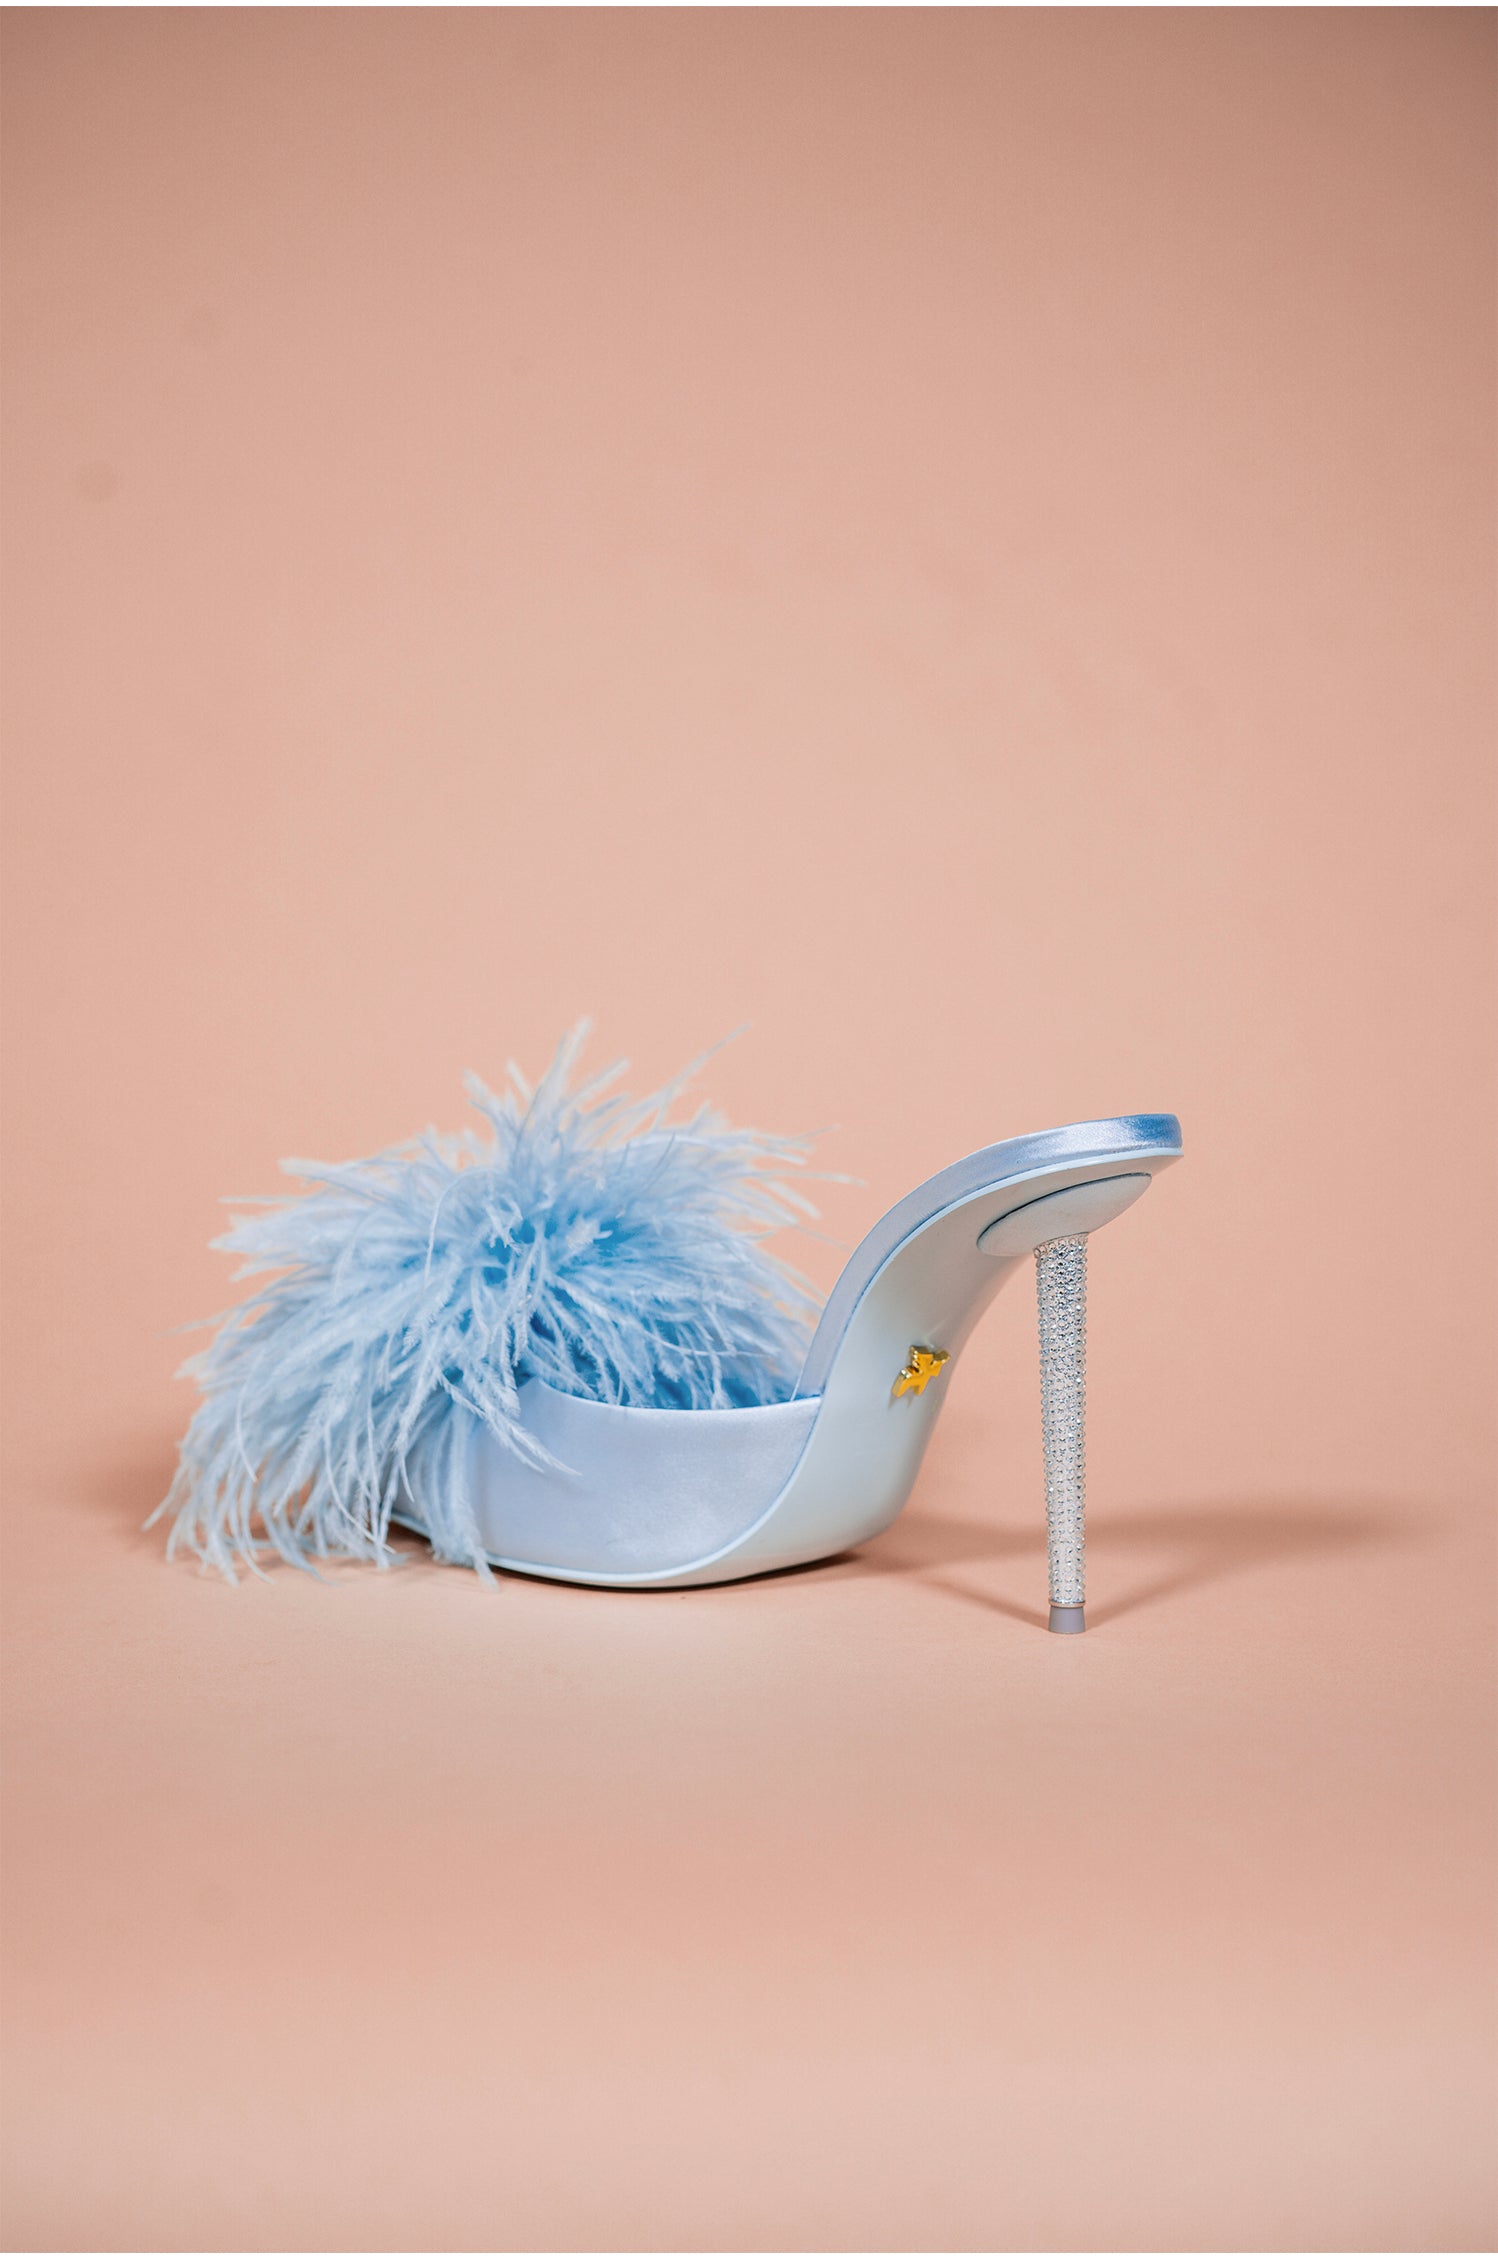 Ugg W Del Rey Fluff Heels Sandals Ankle Strap Size 6 Black | eBay